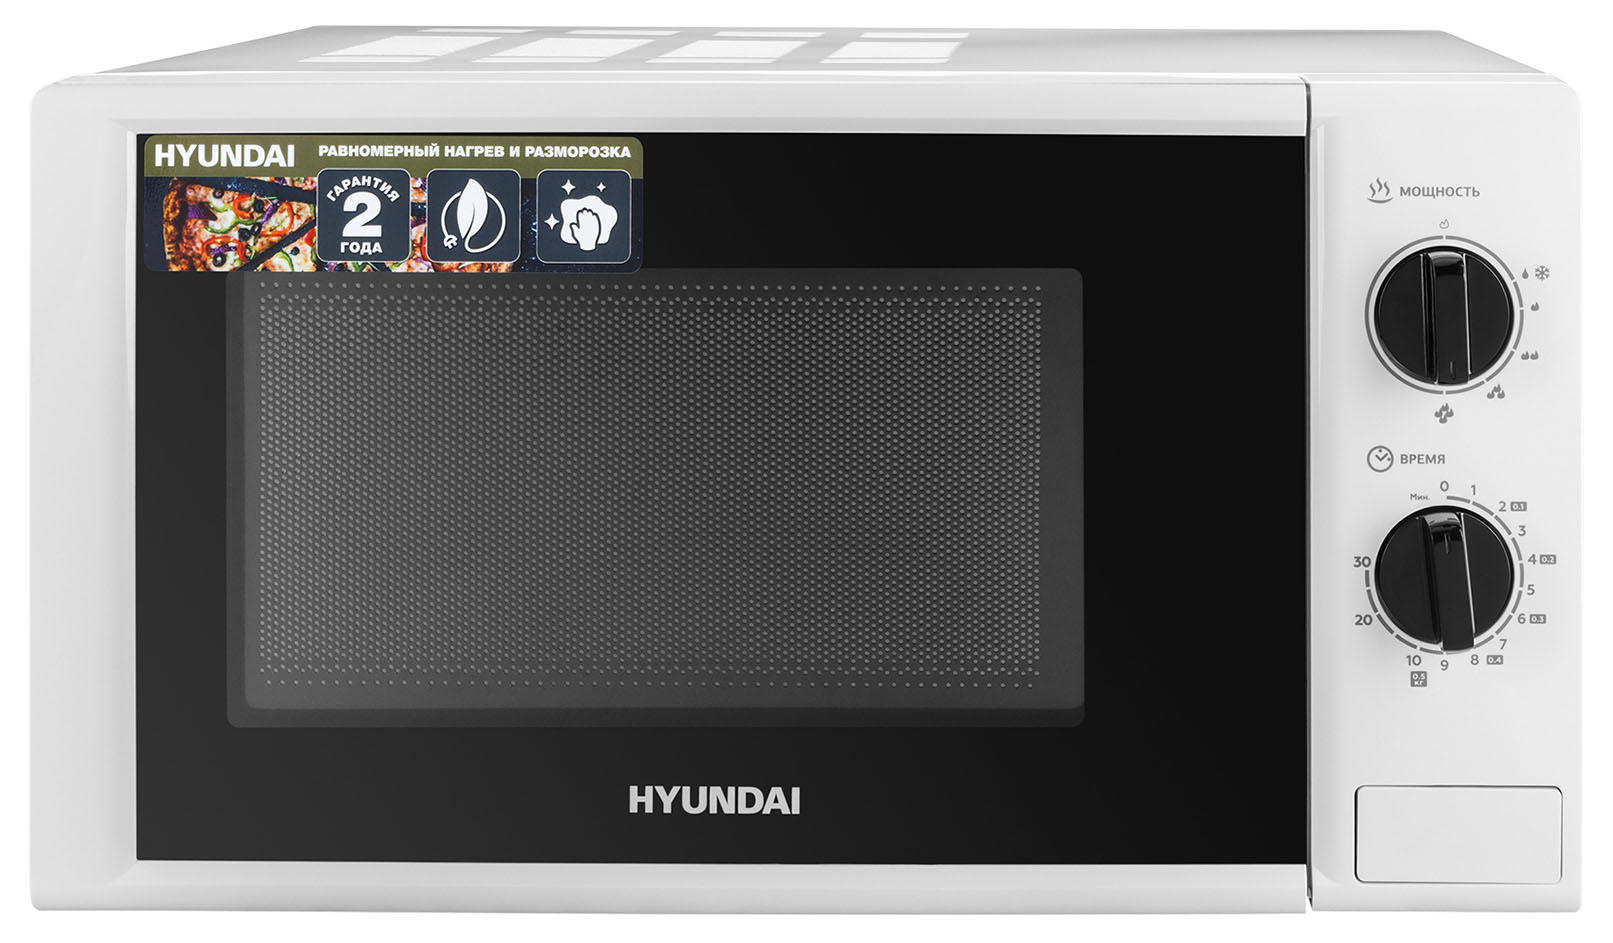   Hyundai HYM-M2048, 700, 20, 